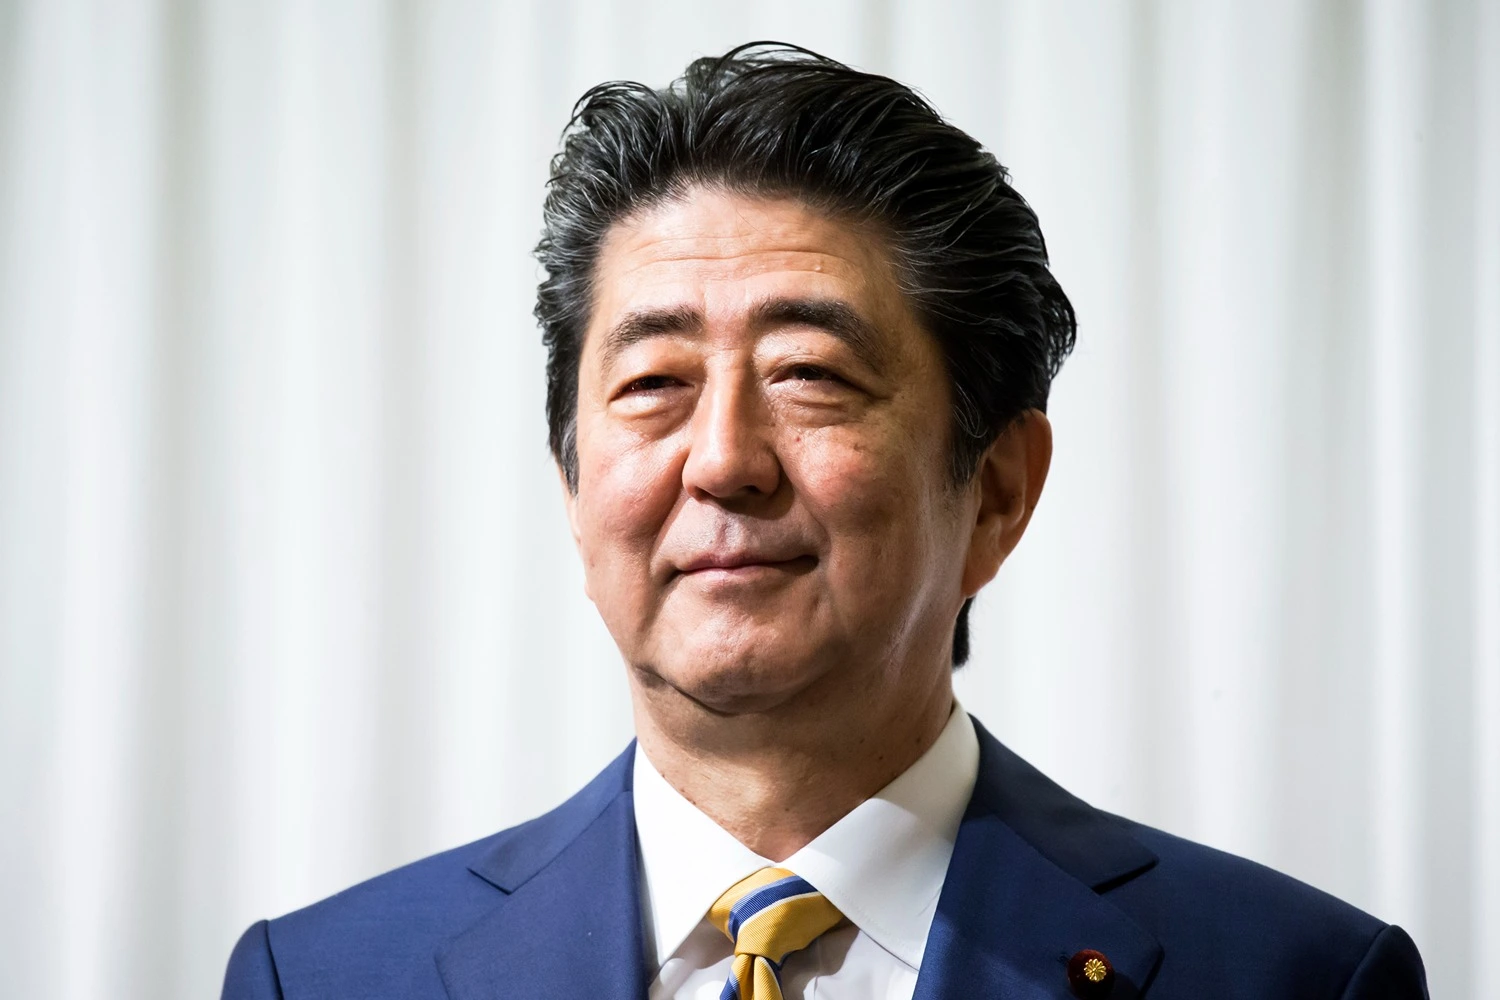 وزیر اعظم شنزو آبے کی آخری رسومات میں شریک ہونے کے لیے ٹوکیو روانہ